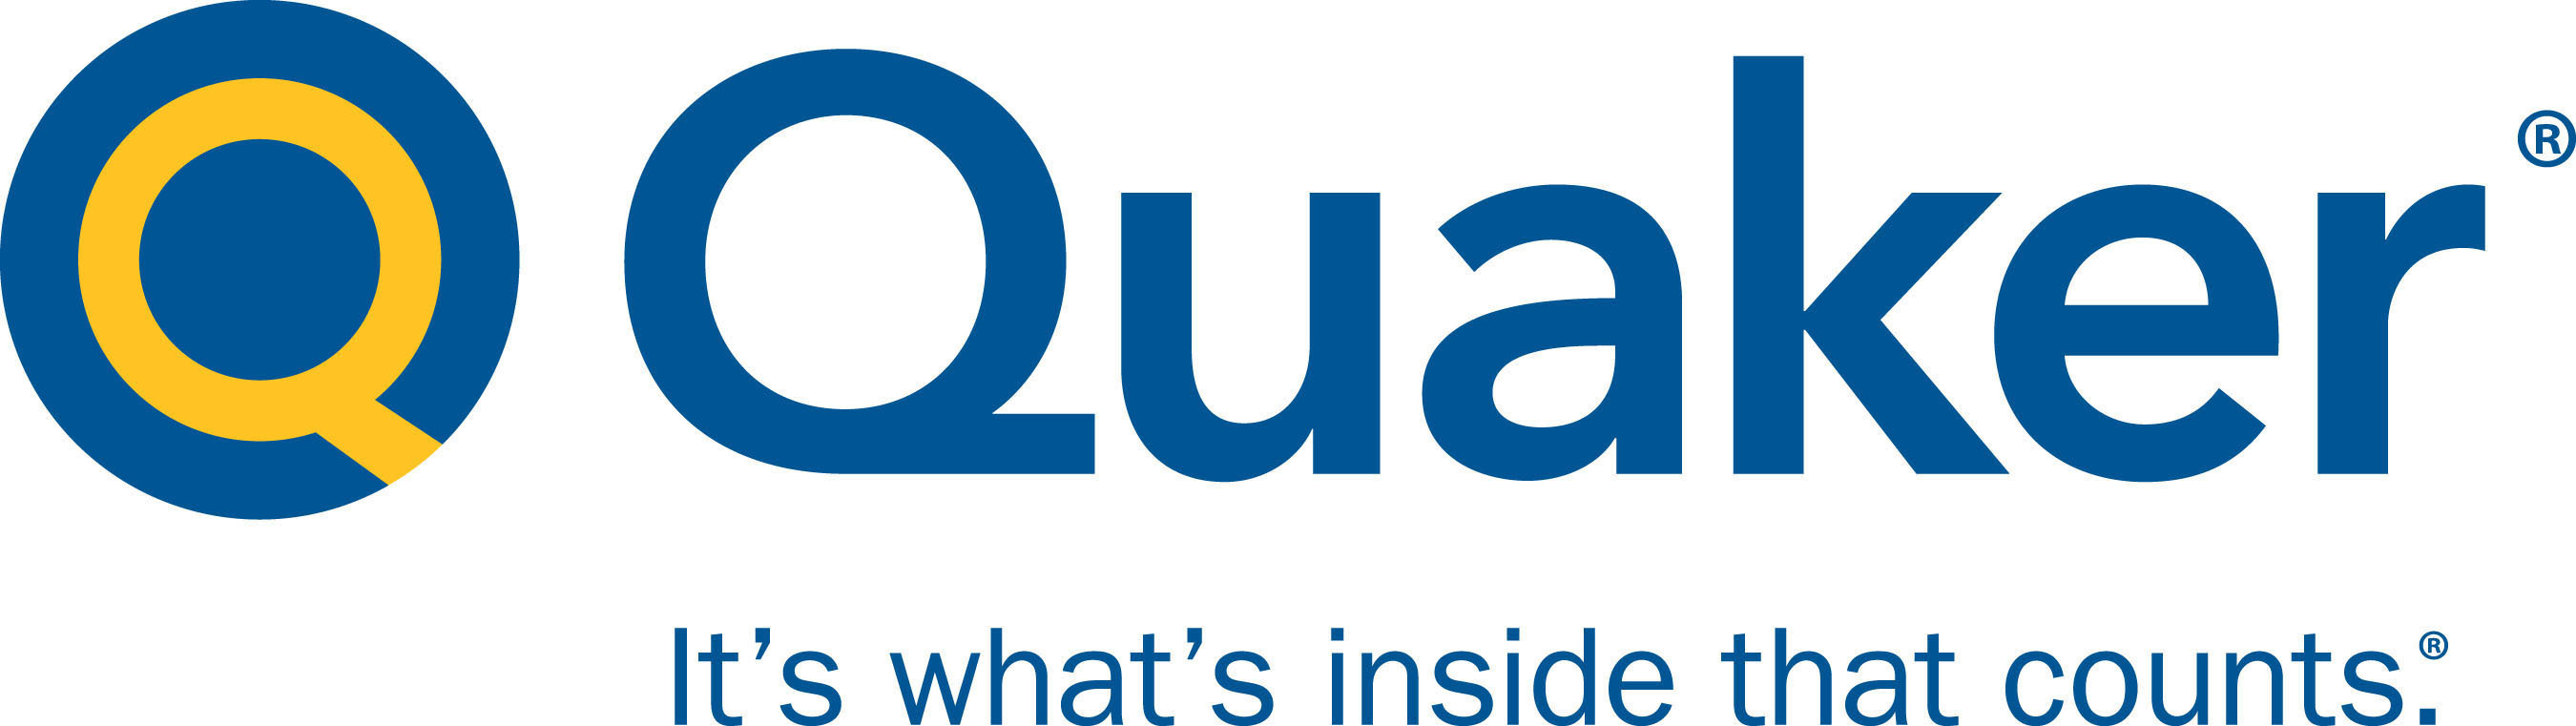 Quaker Chemical logo.